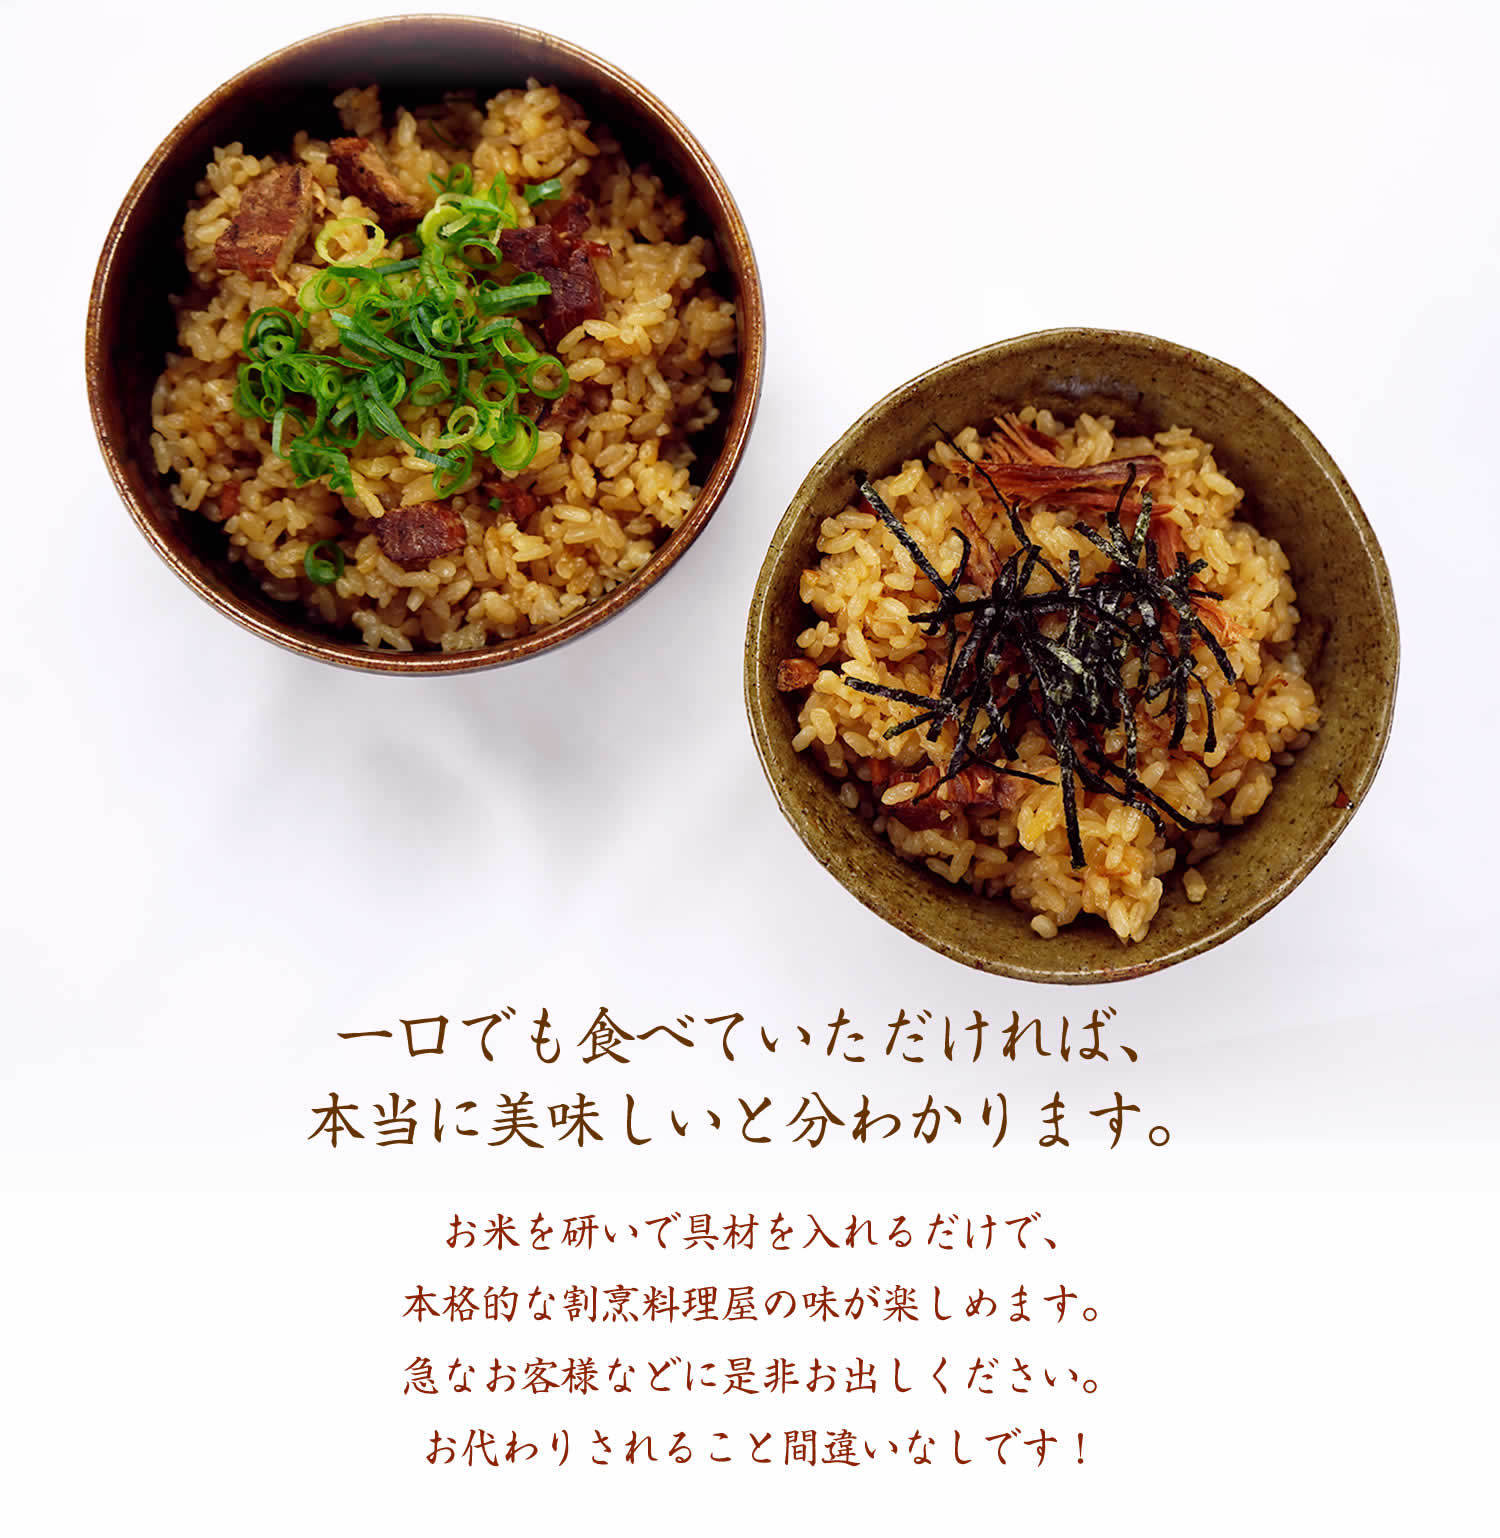 割烹立よしの【ほぐし飯の素】富士桜ポークの「スペアリブ」